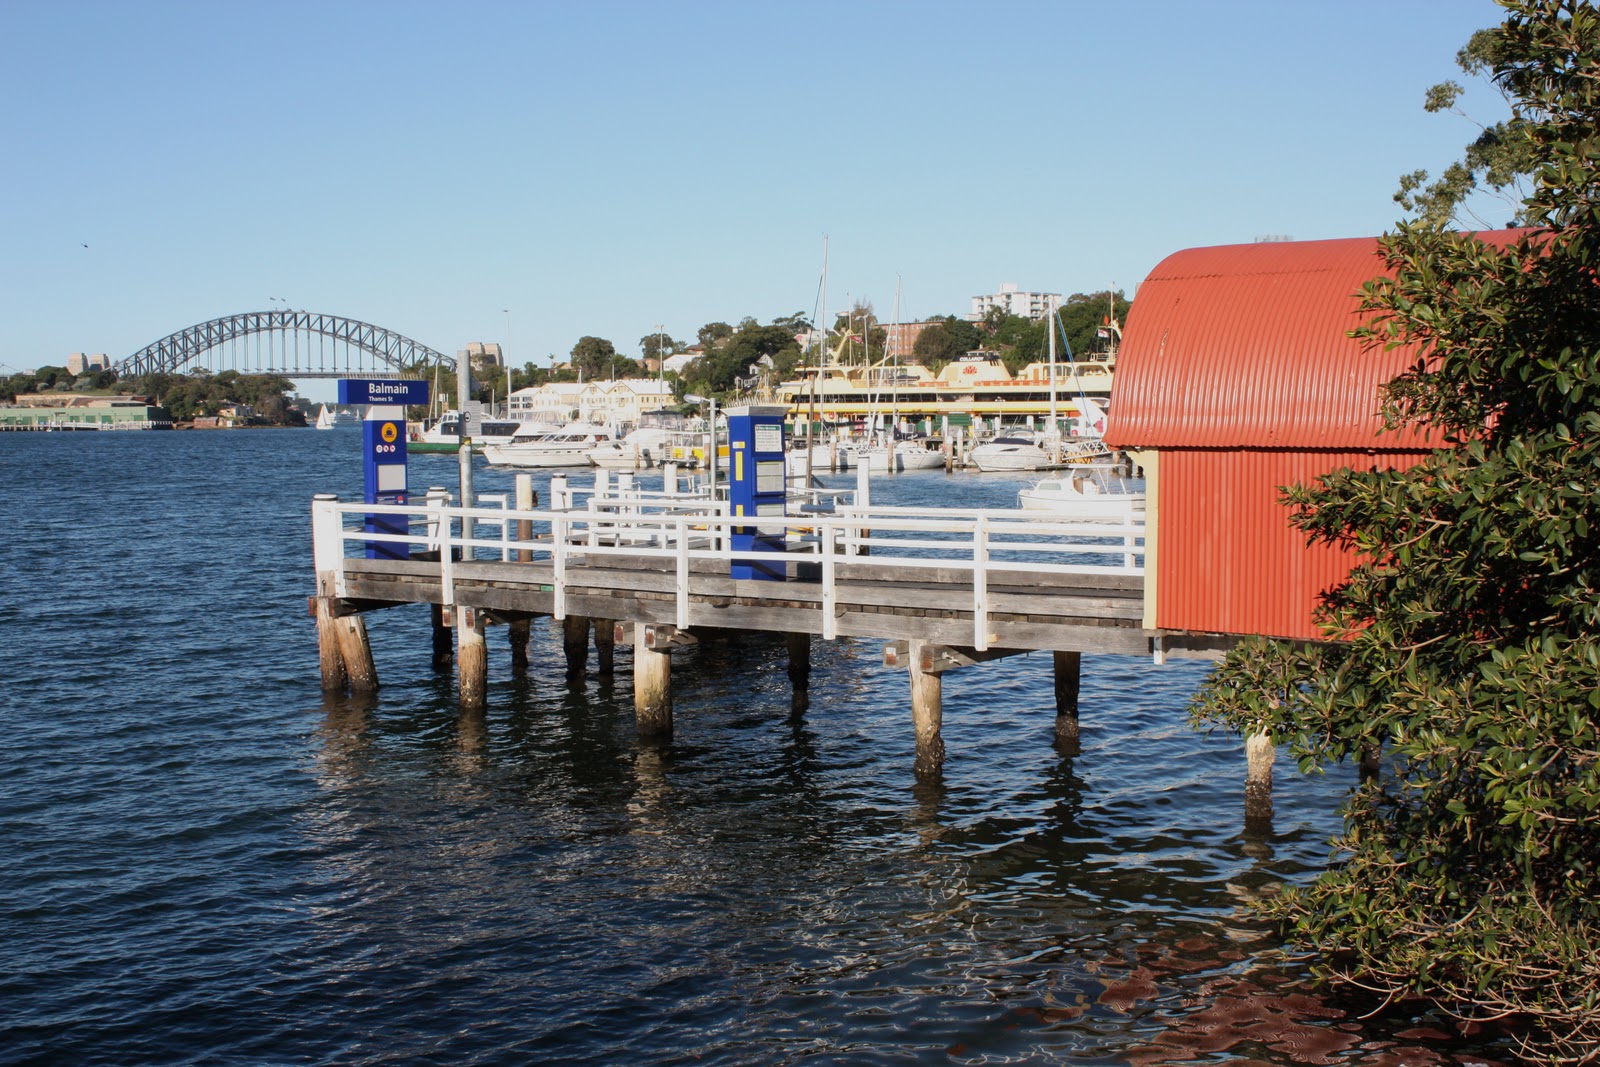 Sydney City and Suburbs: ferry